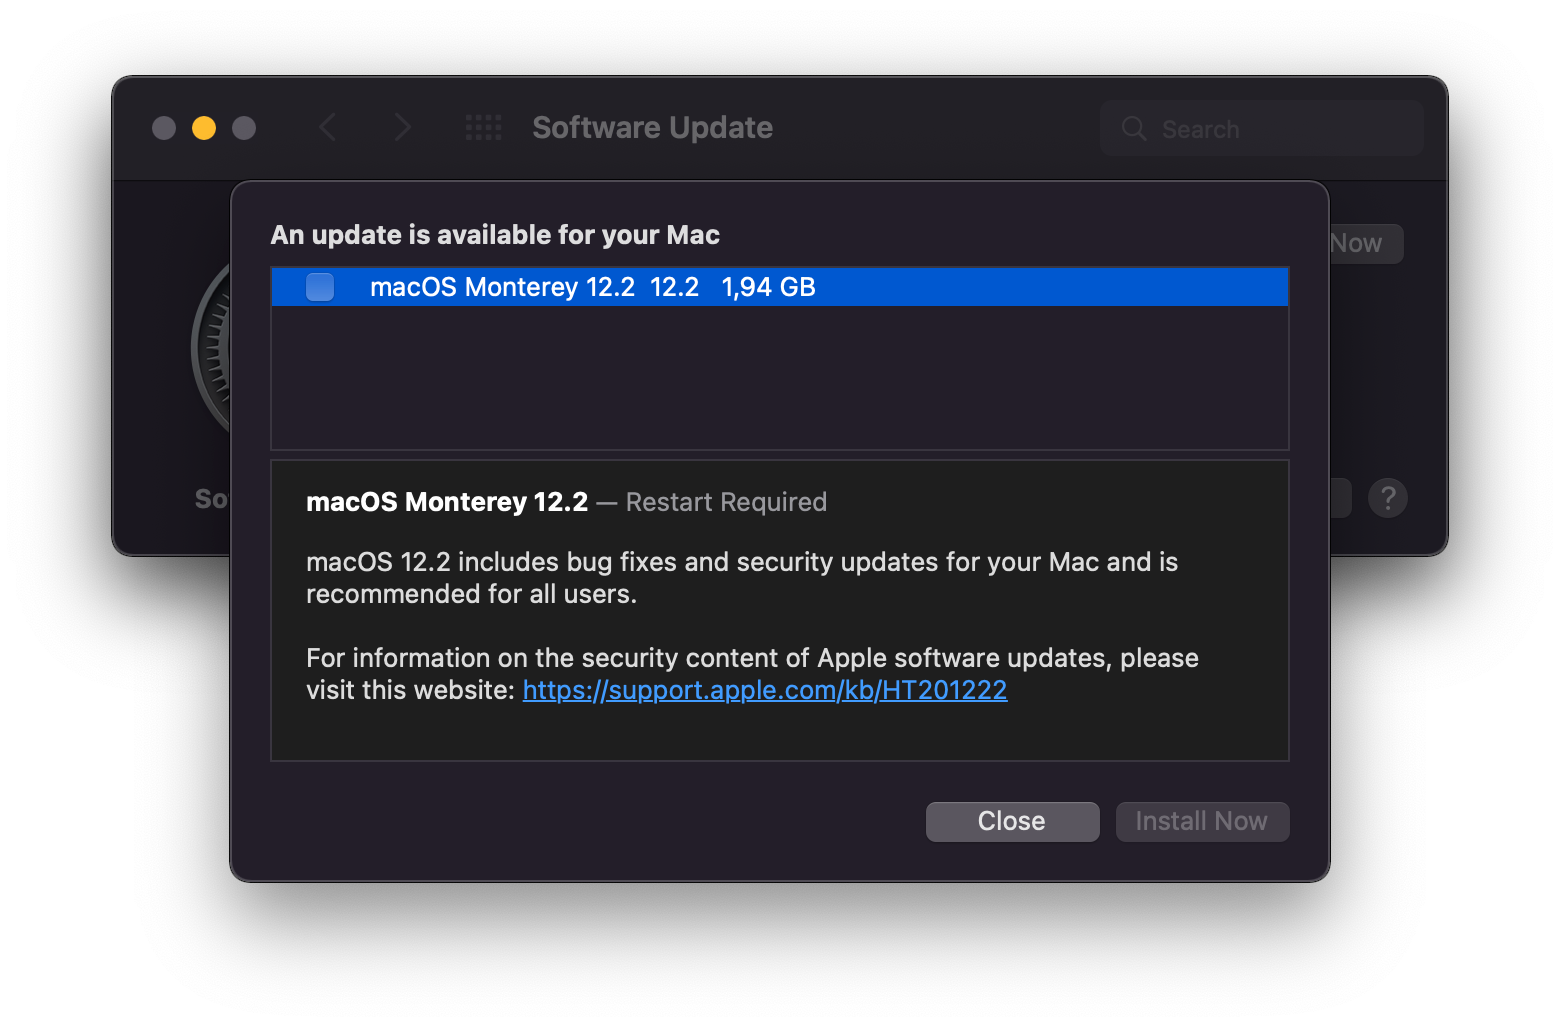 macOS Monterey Update